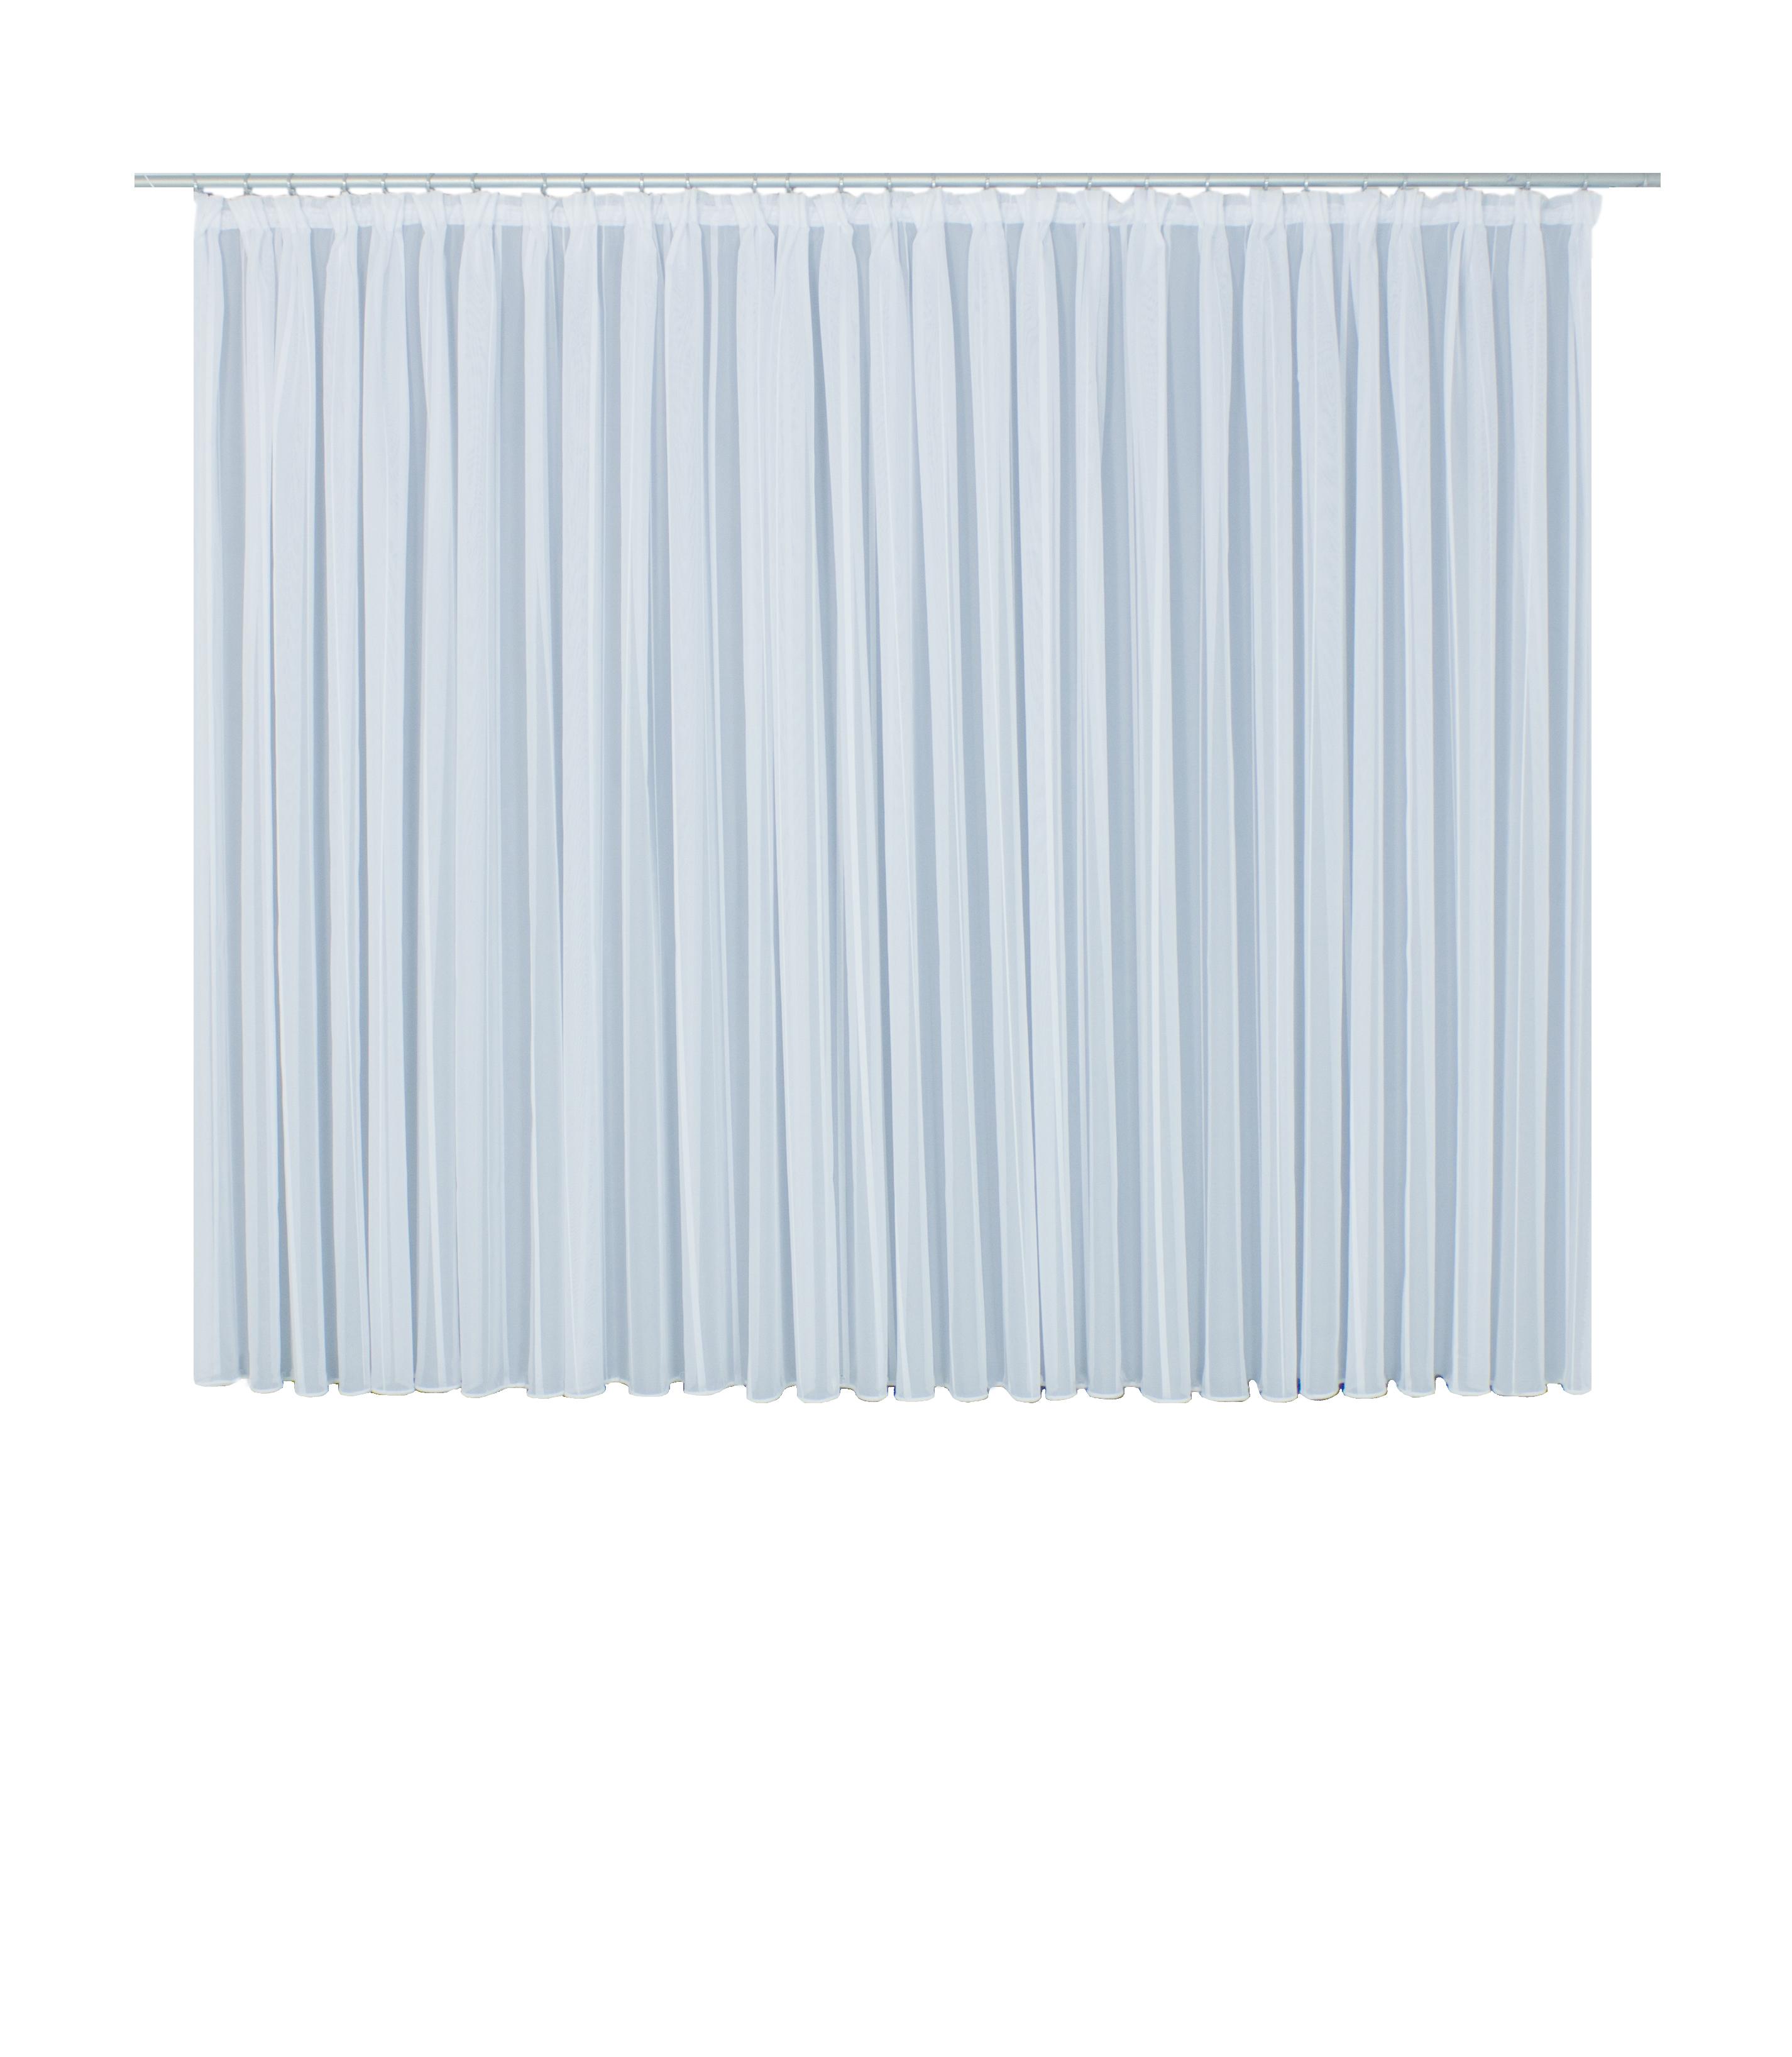 7171 (Gardine) - Aufmachung: Faltenband 1:3 | Farbe: Weiß | Größe: 245 x  300 cm